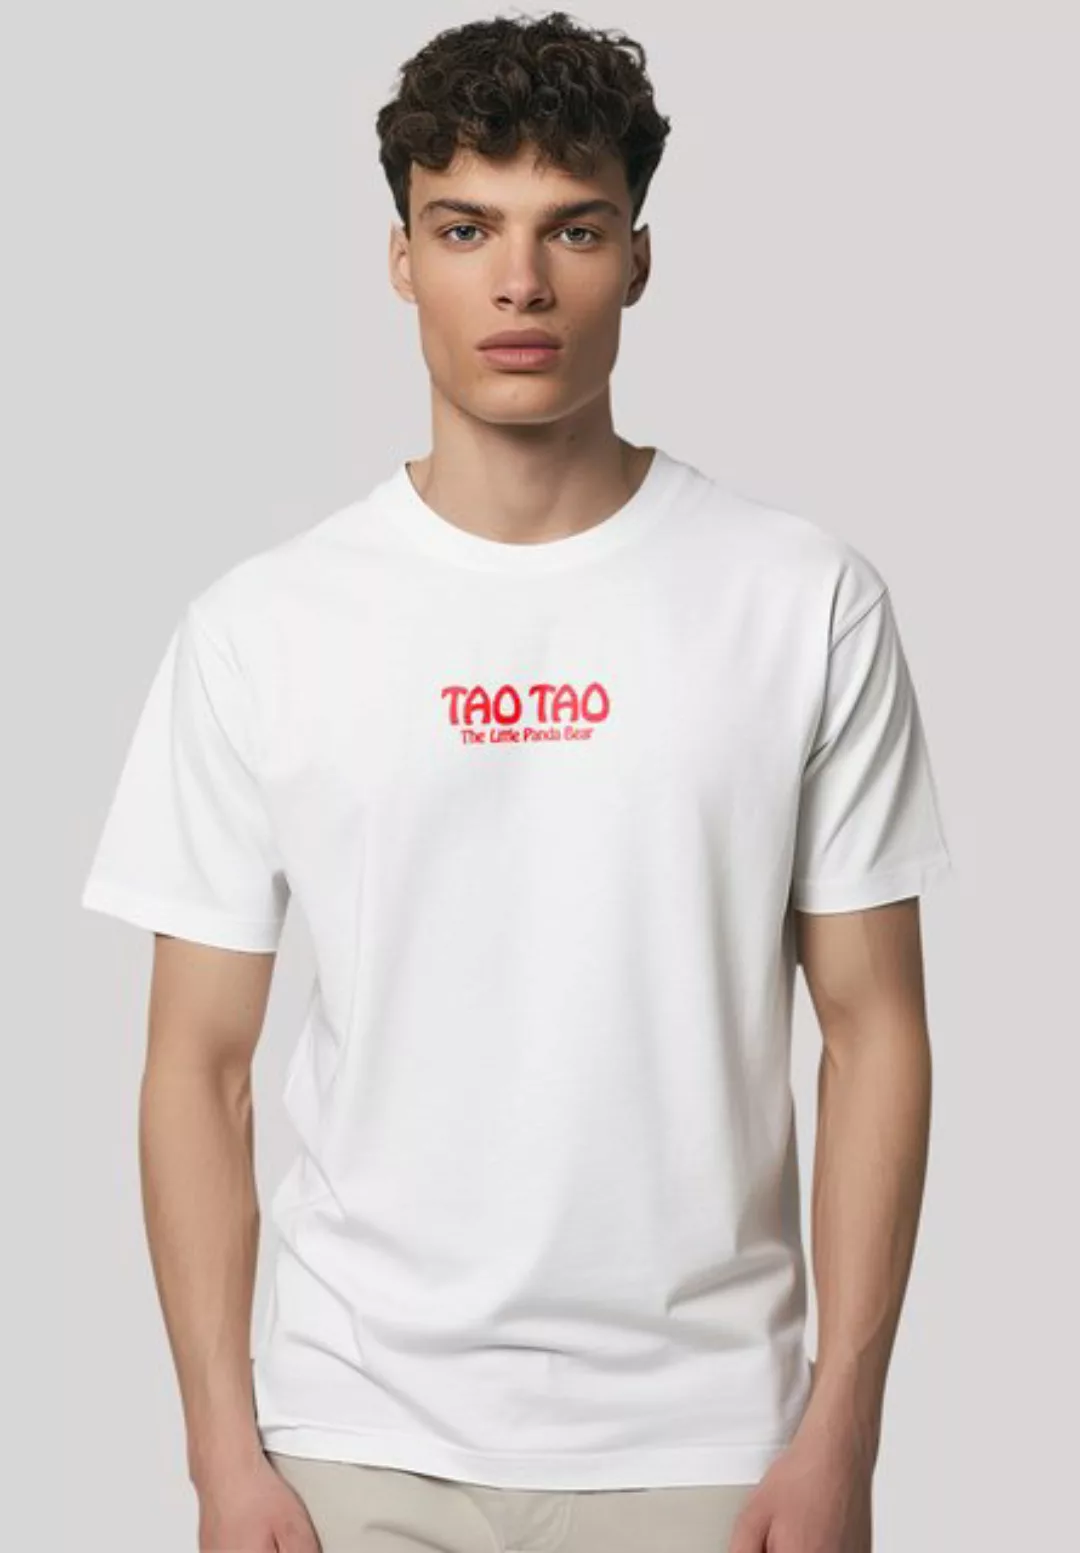 F4NT4STIC T-Shirt Tao Tao LOGO Premium Qualität, Zeichentrick, TV Serie günstig online kaufen